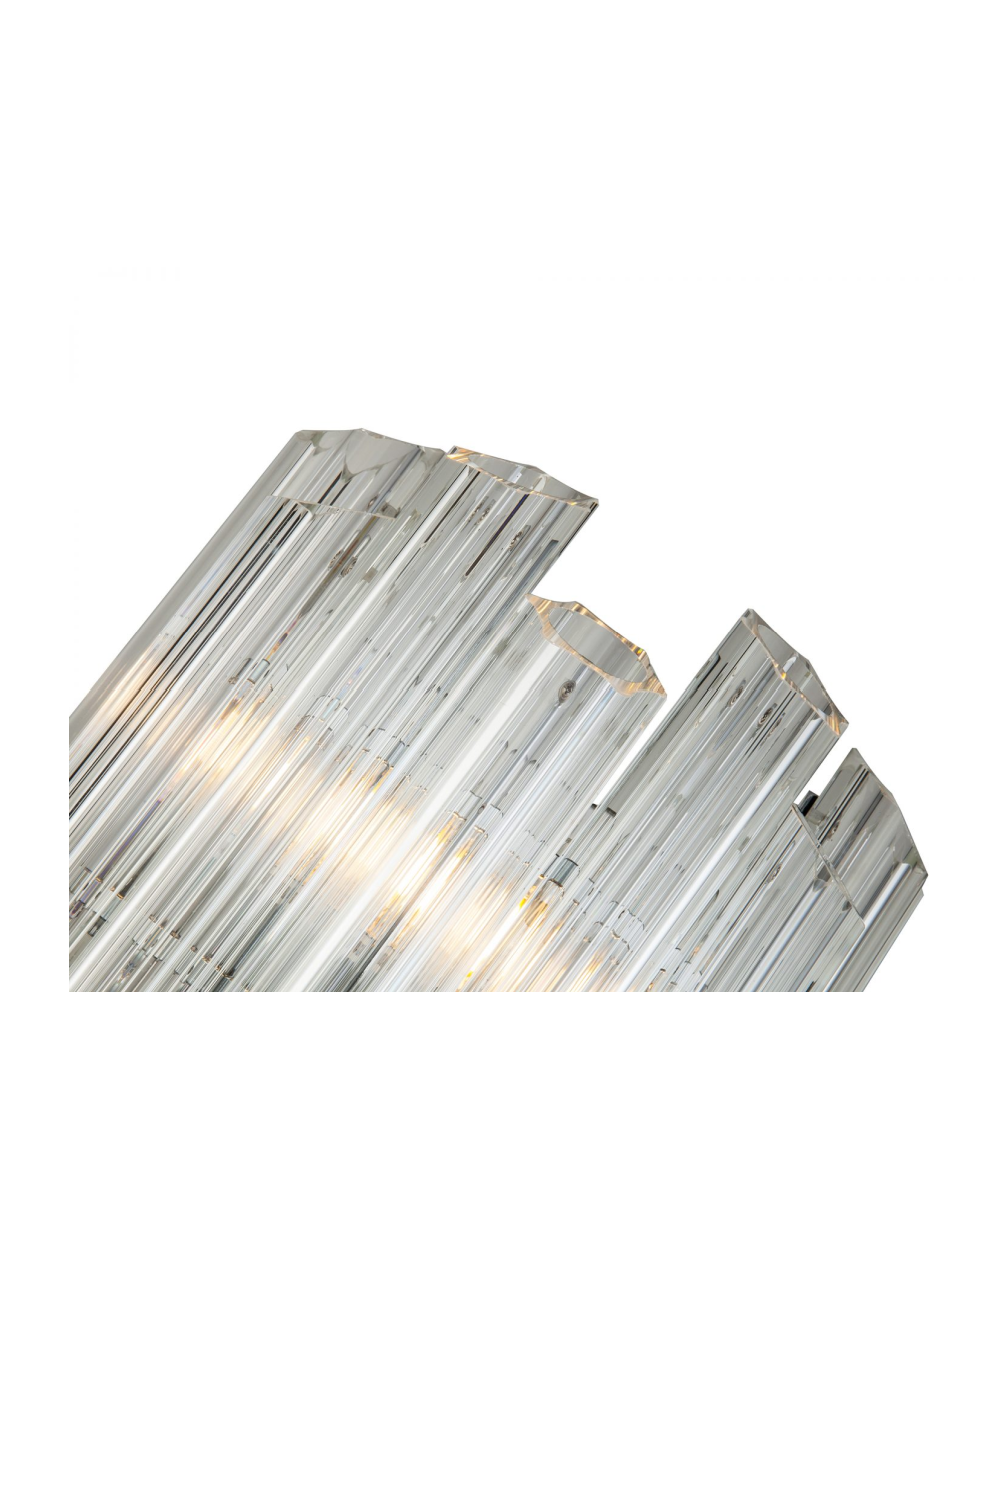 Glass Hexagonal Wall Light | Liang & Eimil Quartz | Oroa.com